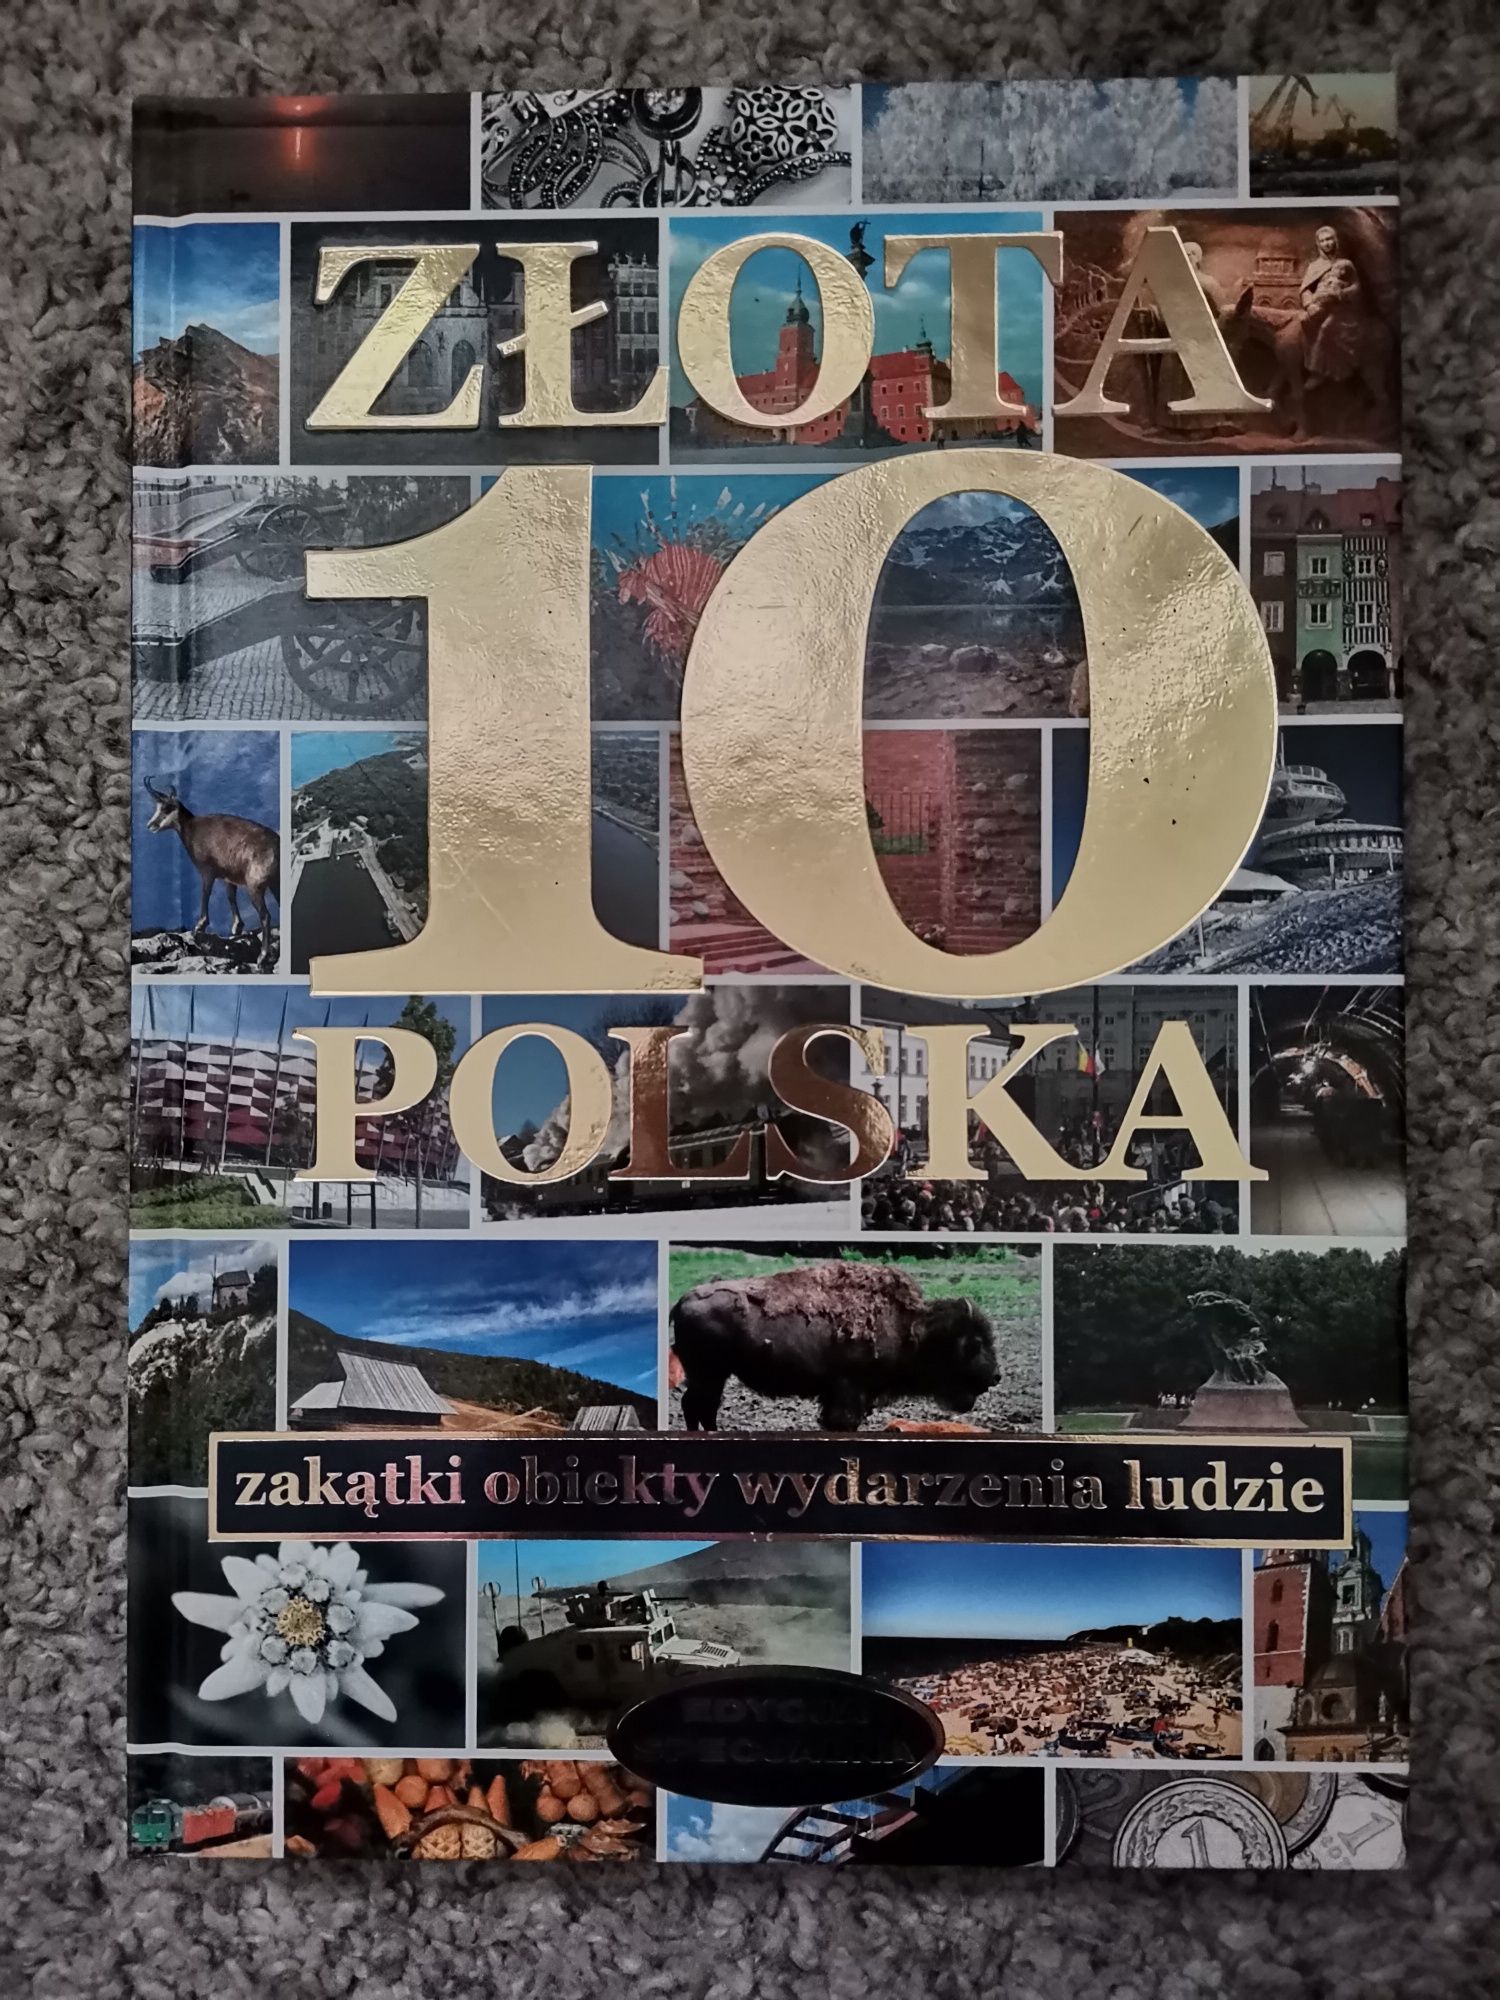 Złota 10 polska-zakątki, obiekty, wydarzenia, ludzie edycja specjalna